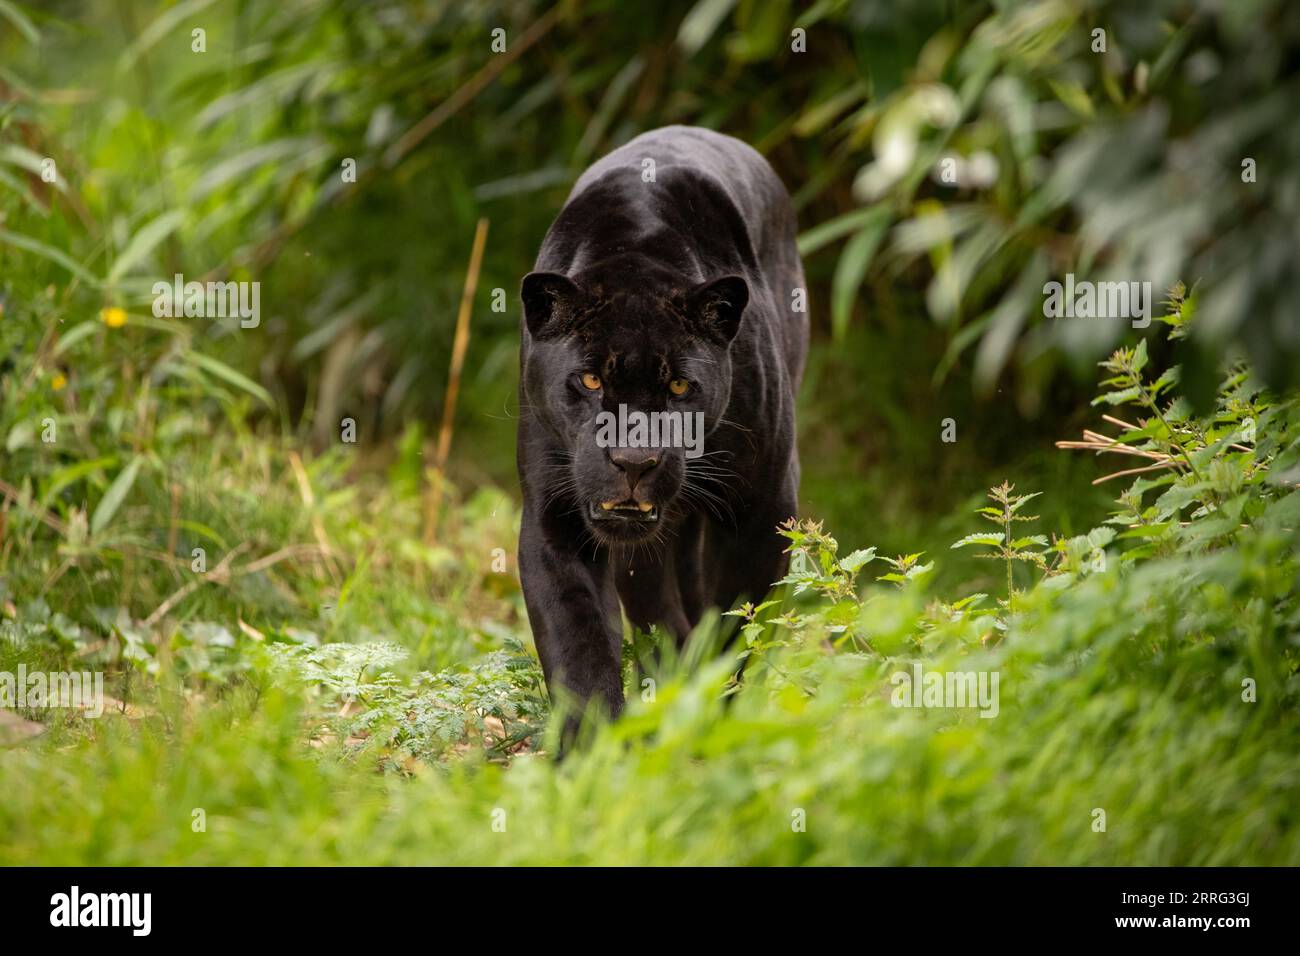 Inkas Incredible coloring in mostra al sole CHESTER ZOO, INGHILTERRA RARI FILMATI mostrano un giaguaro nero melanico che si prende da mangiare con una dose di divertimento Foto Stock